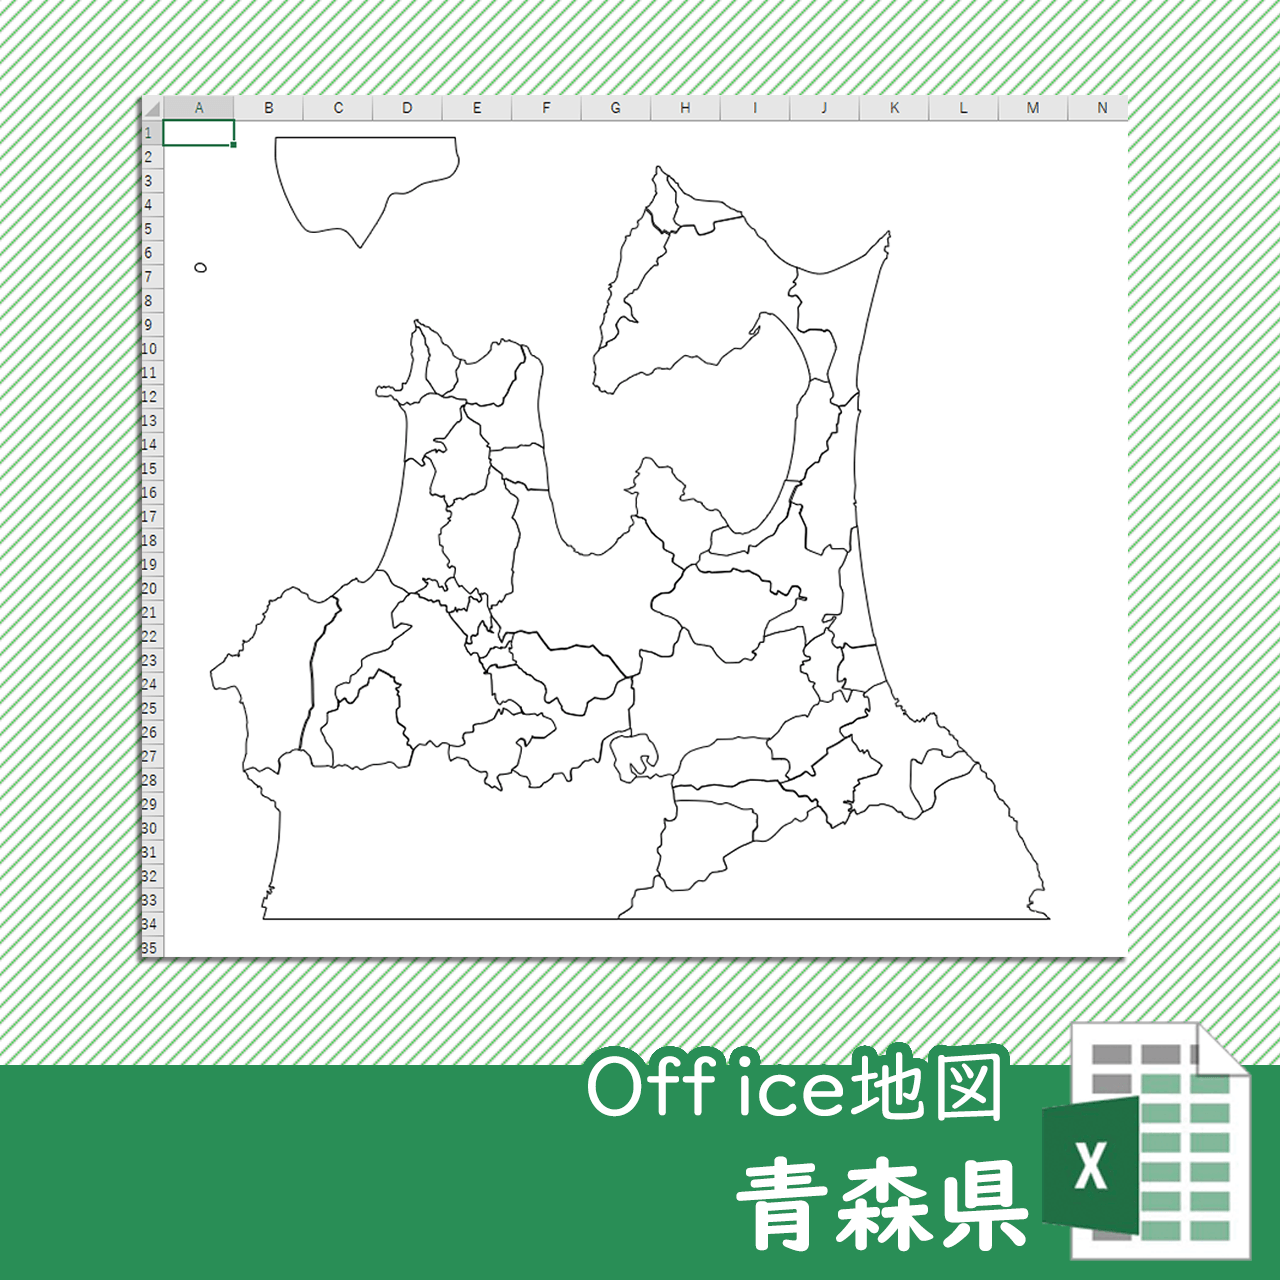 青森県のOffice地図のサムネイル